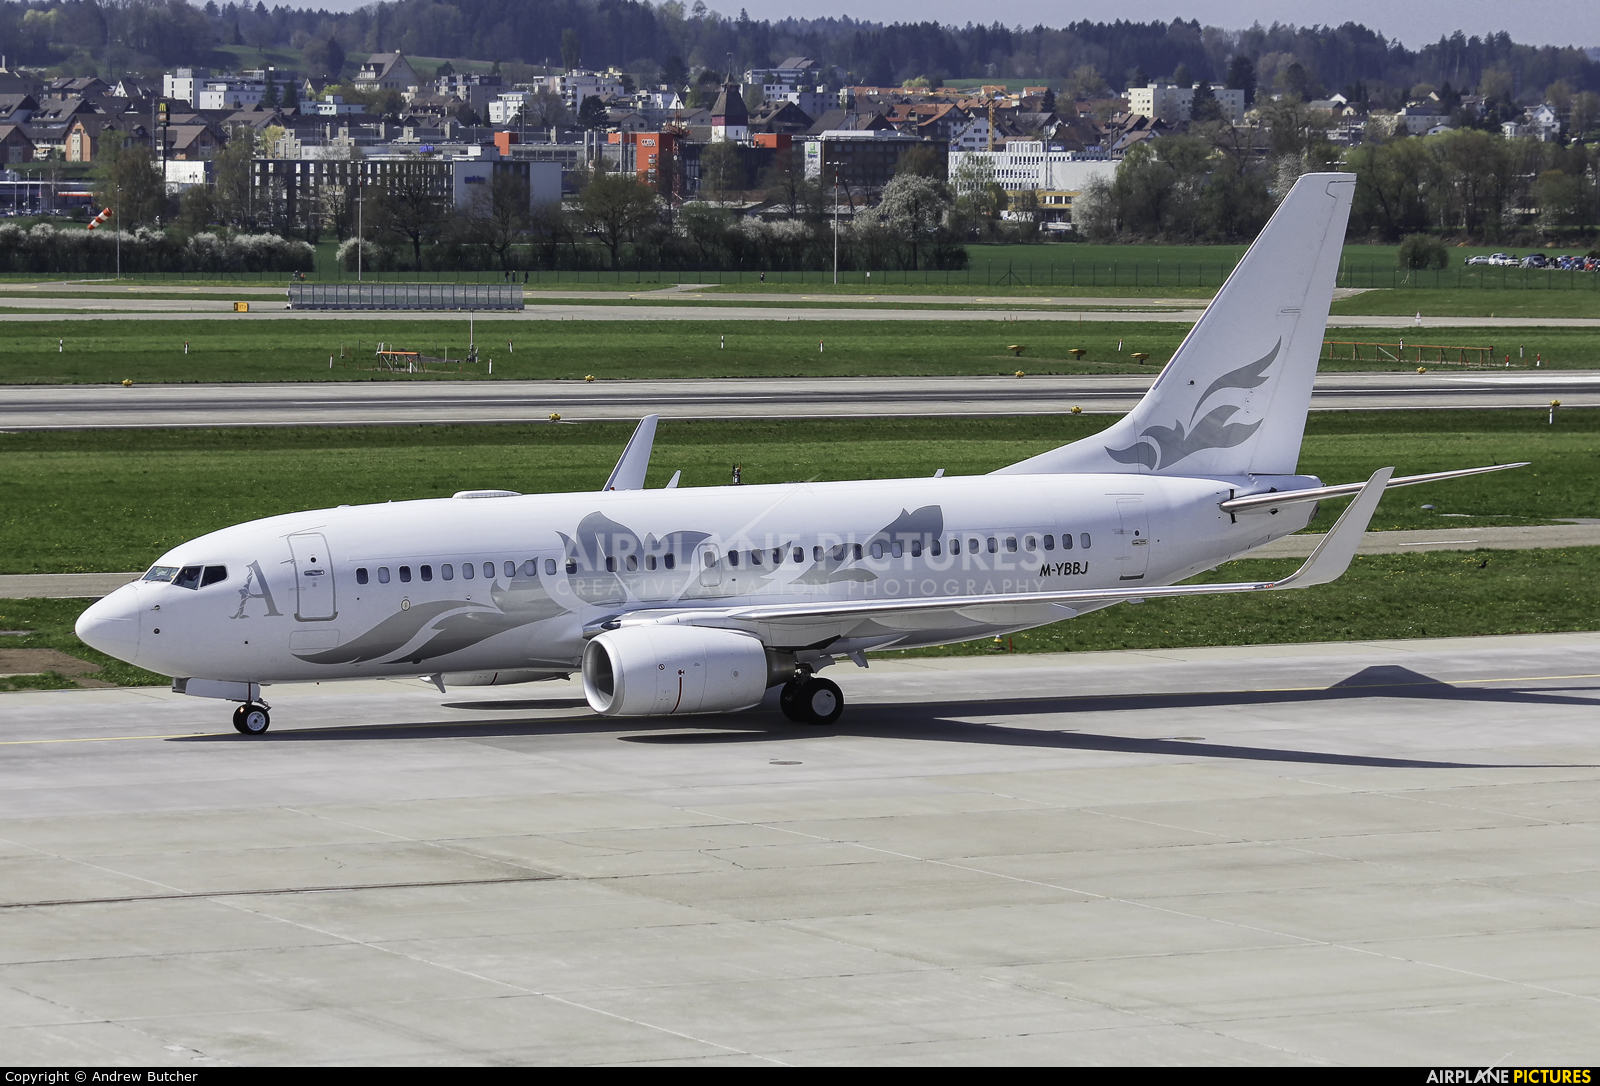 Global Jet Austria M-YBBJ aircraft at Zurich